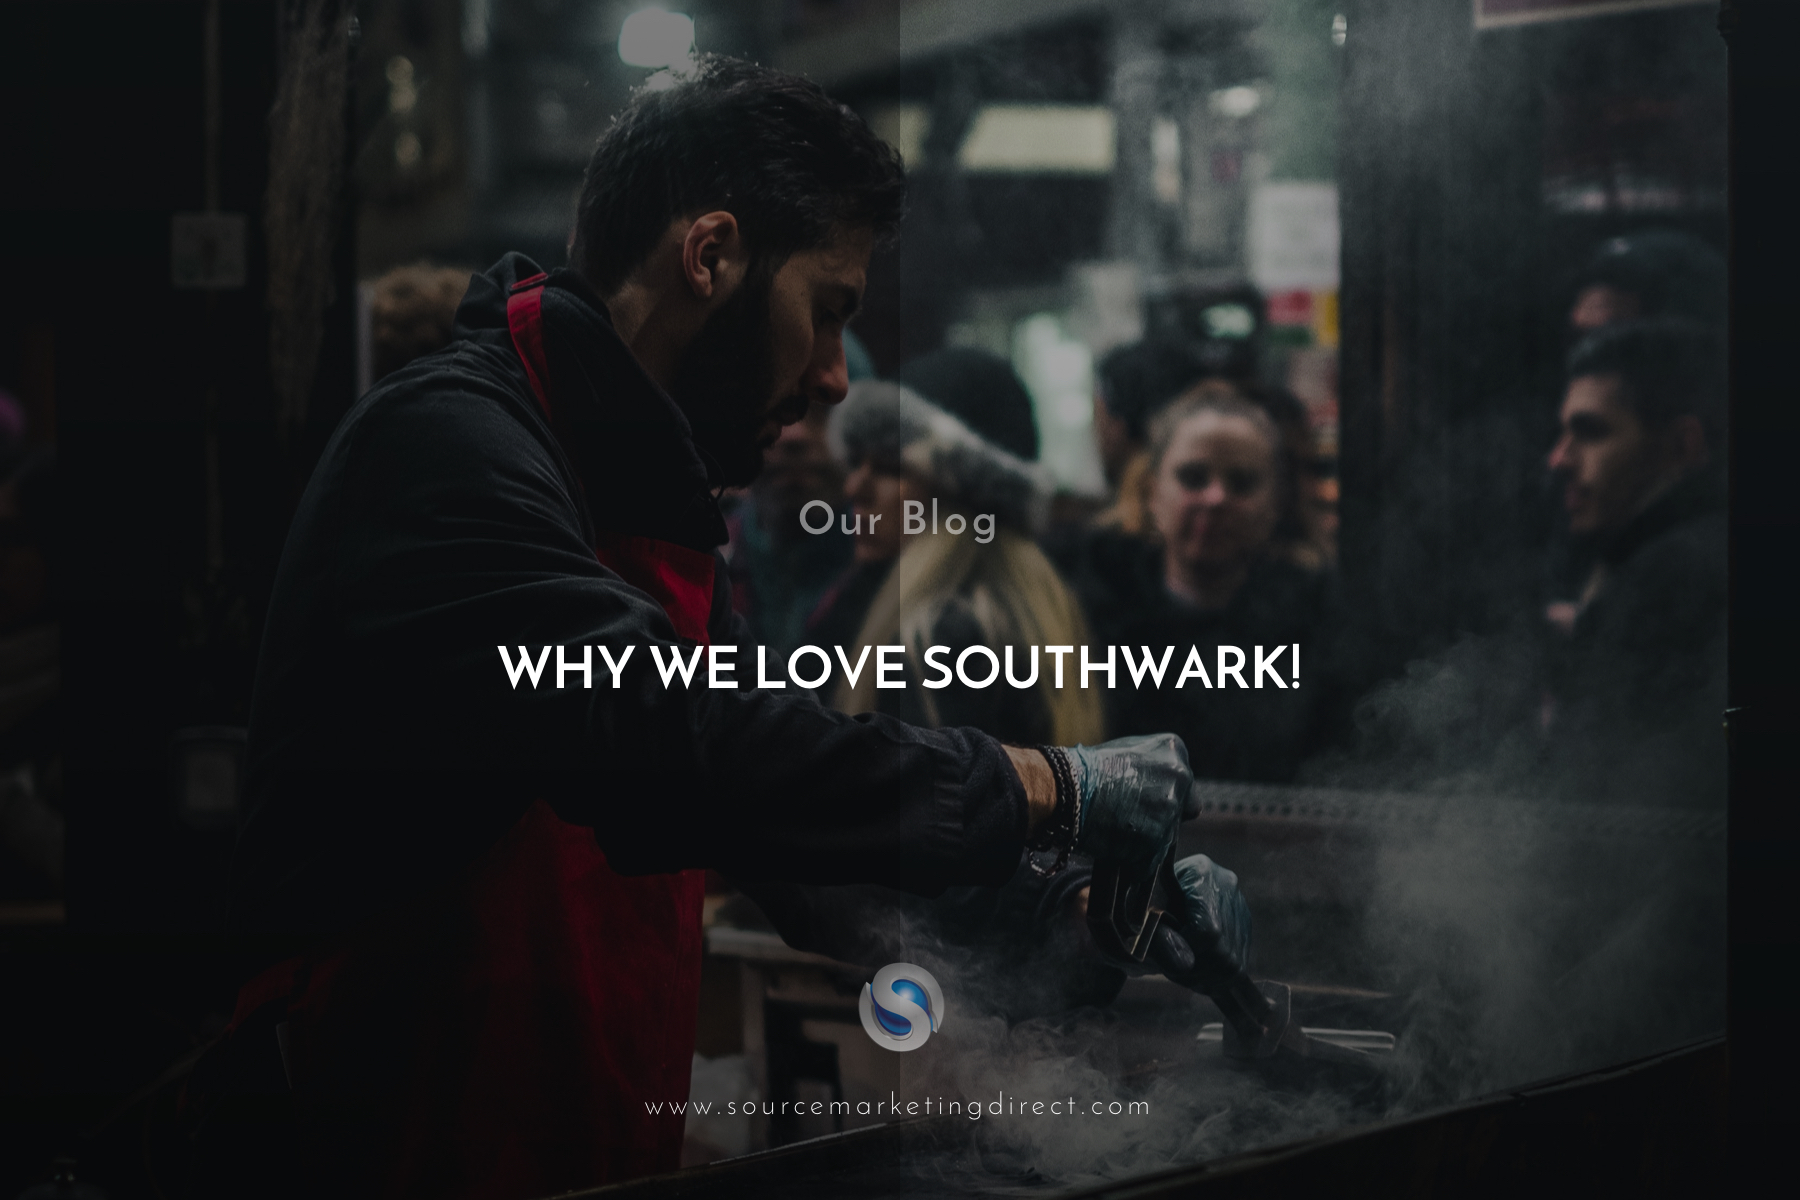 smd_southwark